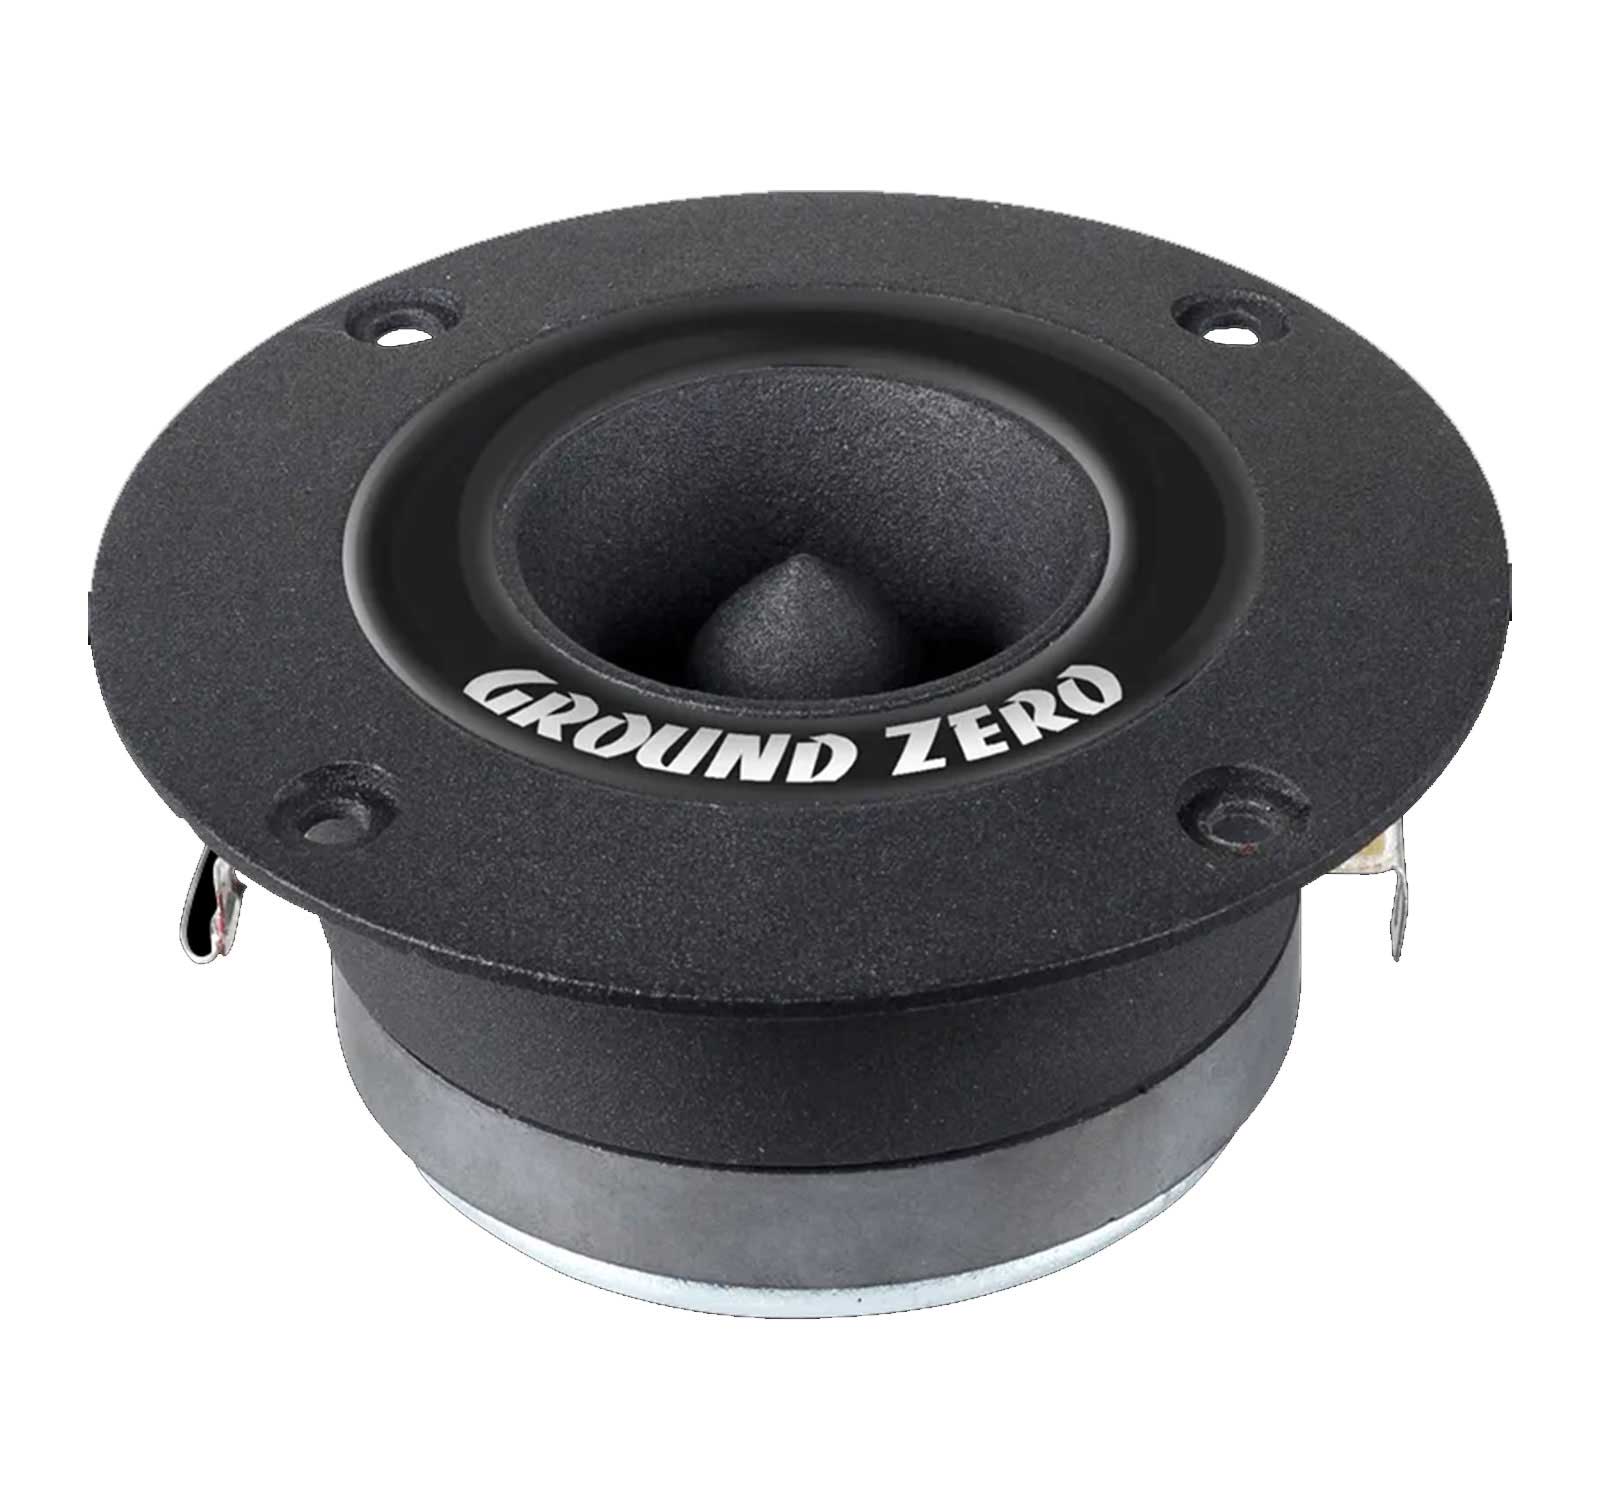 Ground Zero GZCT 3500X-B - 9,8 cm Hochtöner-Lautsprecher mit 100 Watt (RMS: 30 Watt)